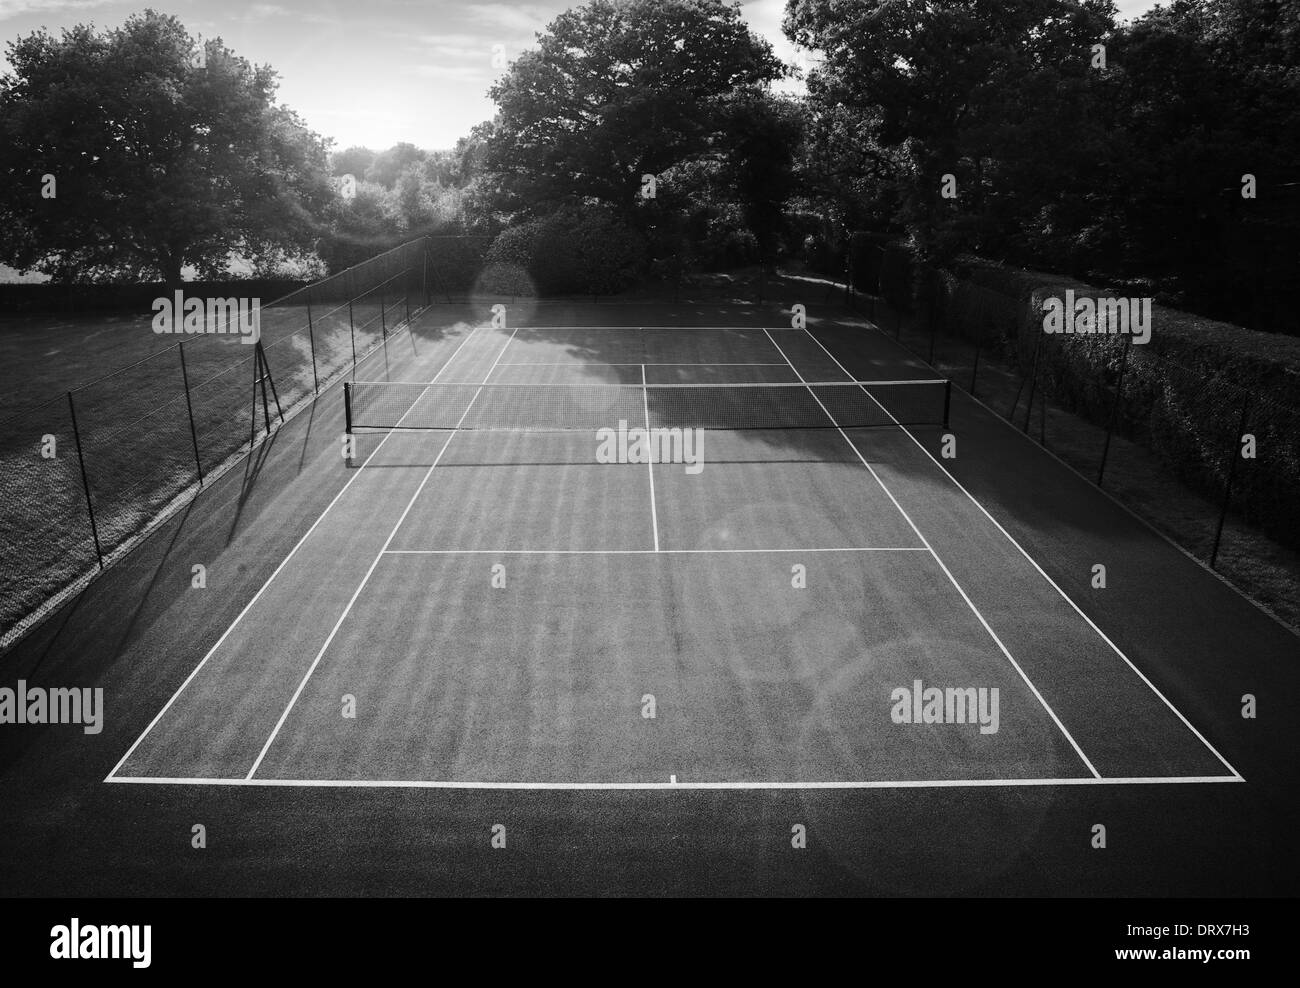 Image de fond de court de tennis prises à partir d'un angle élevé Banque D'Images